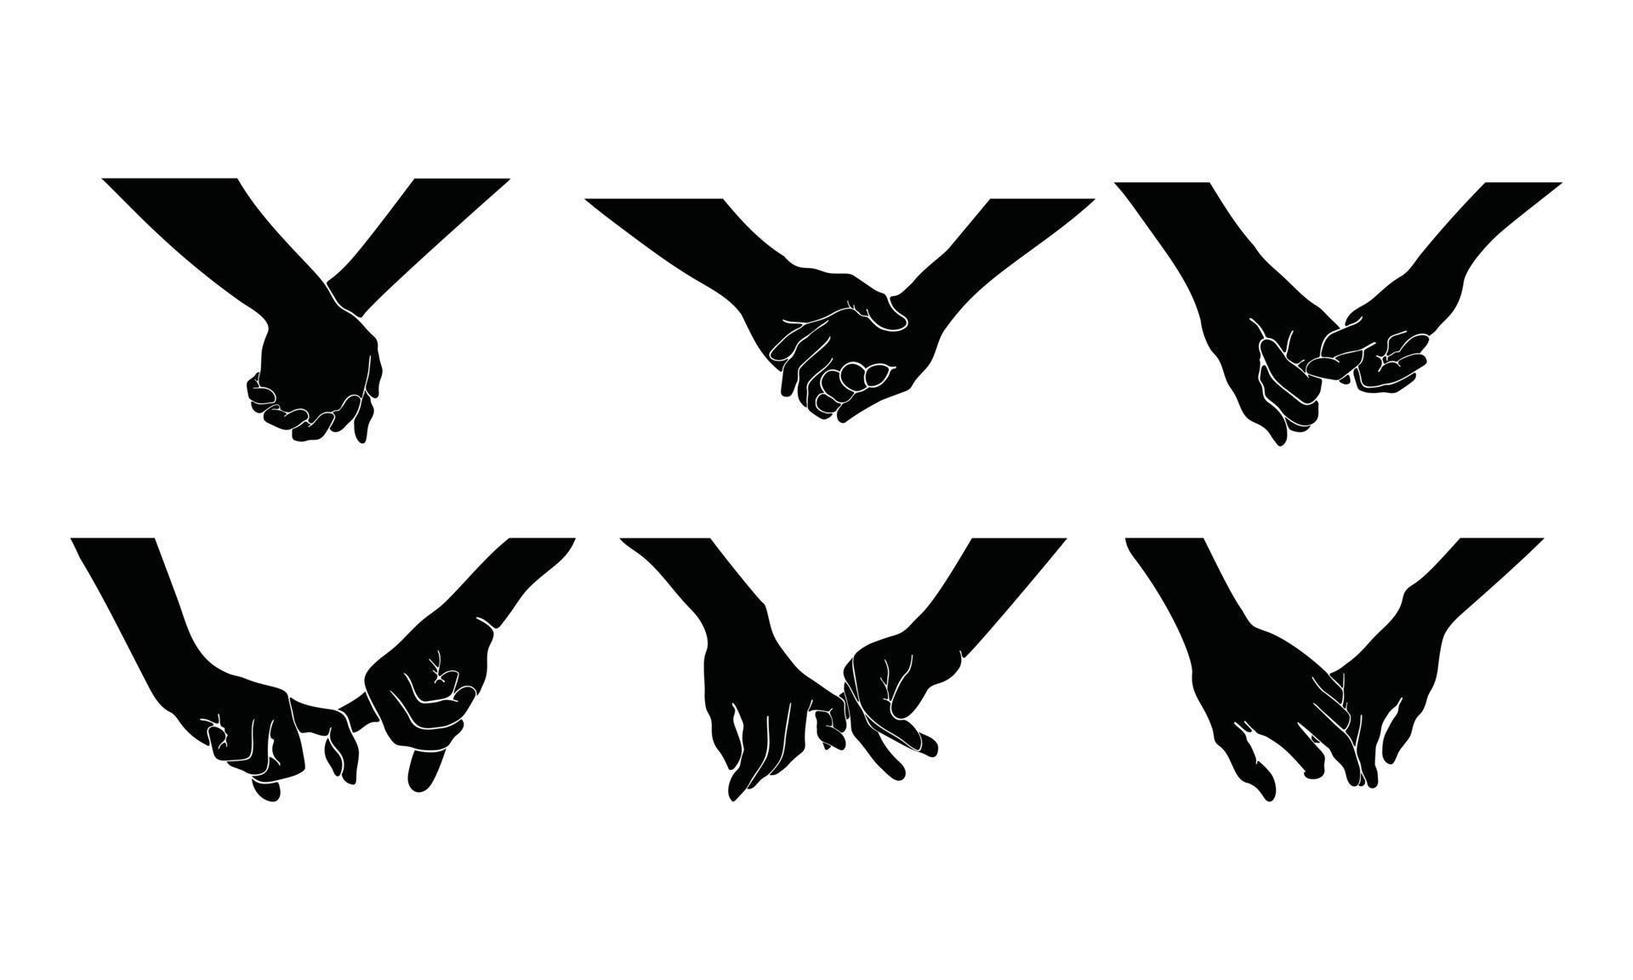 conjunto de mãos de um casal se abraçam, o que significa a união e o carinho. uma ilustração da silhueta do relacionamento da mão em um desenho simples. vetor